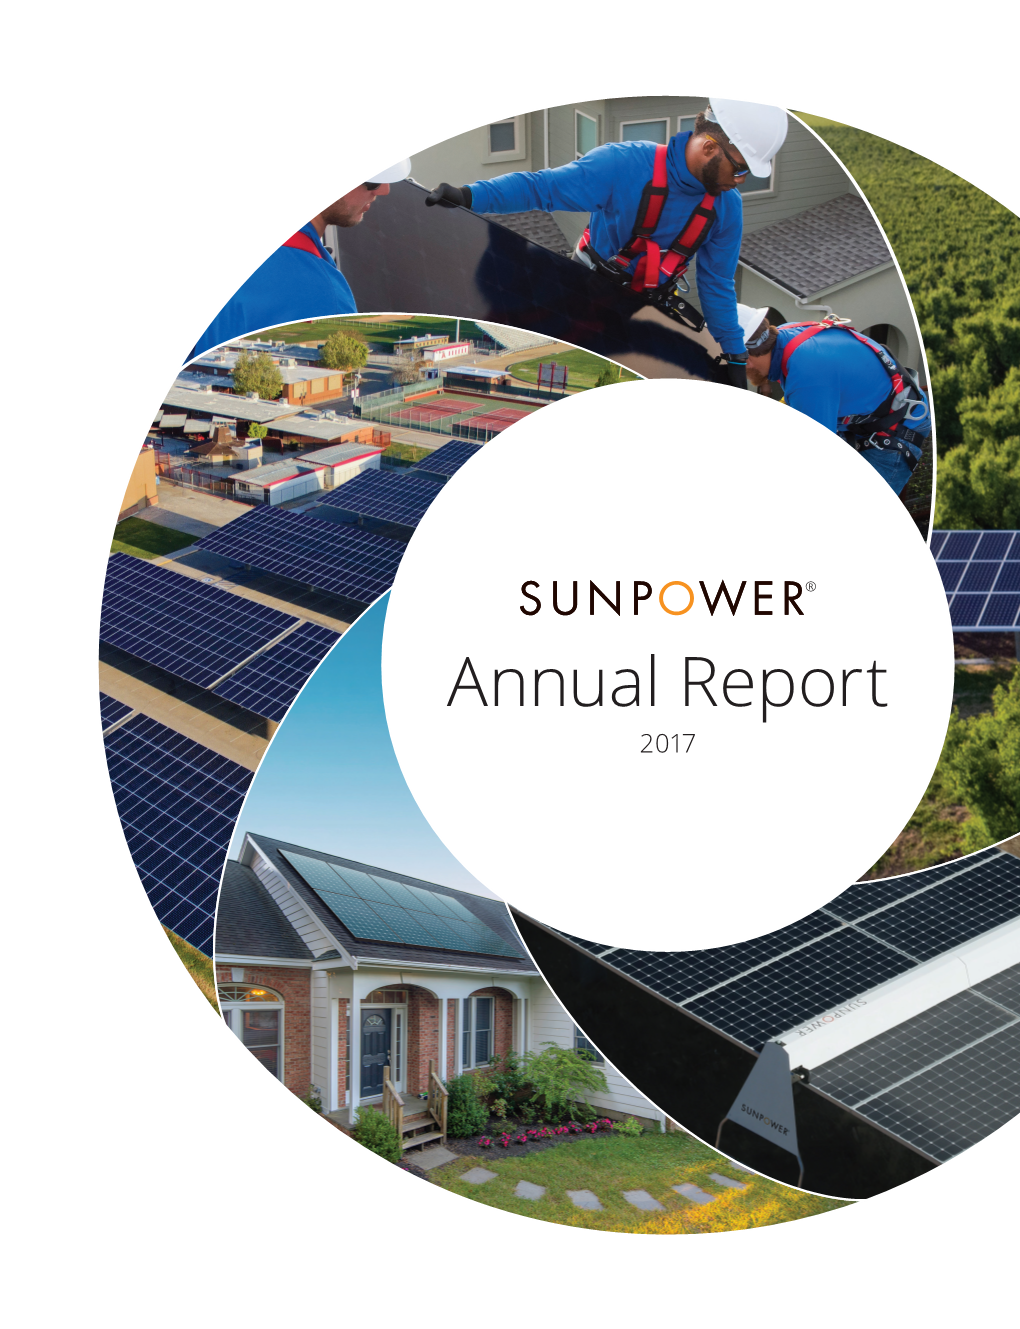 2017 Annual Report, Via the Internet